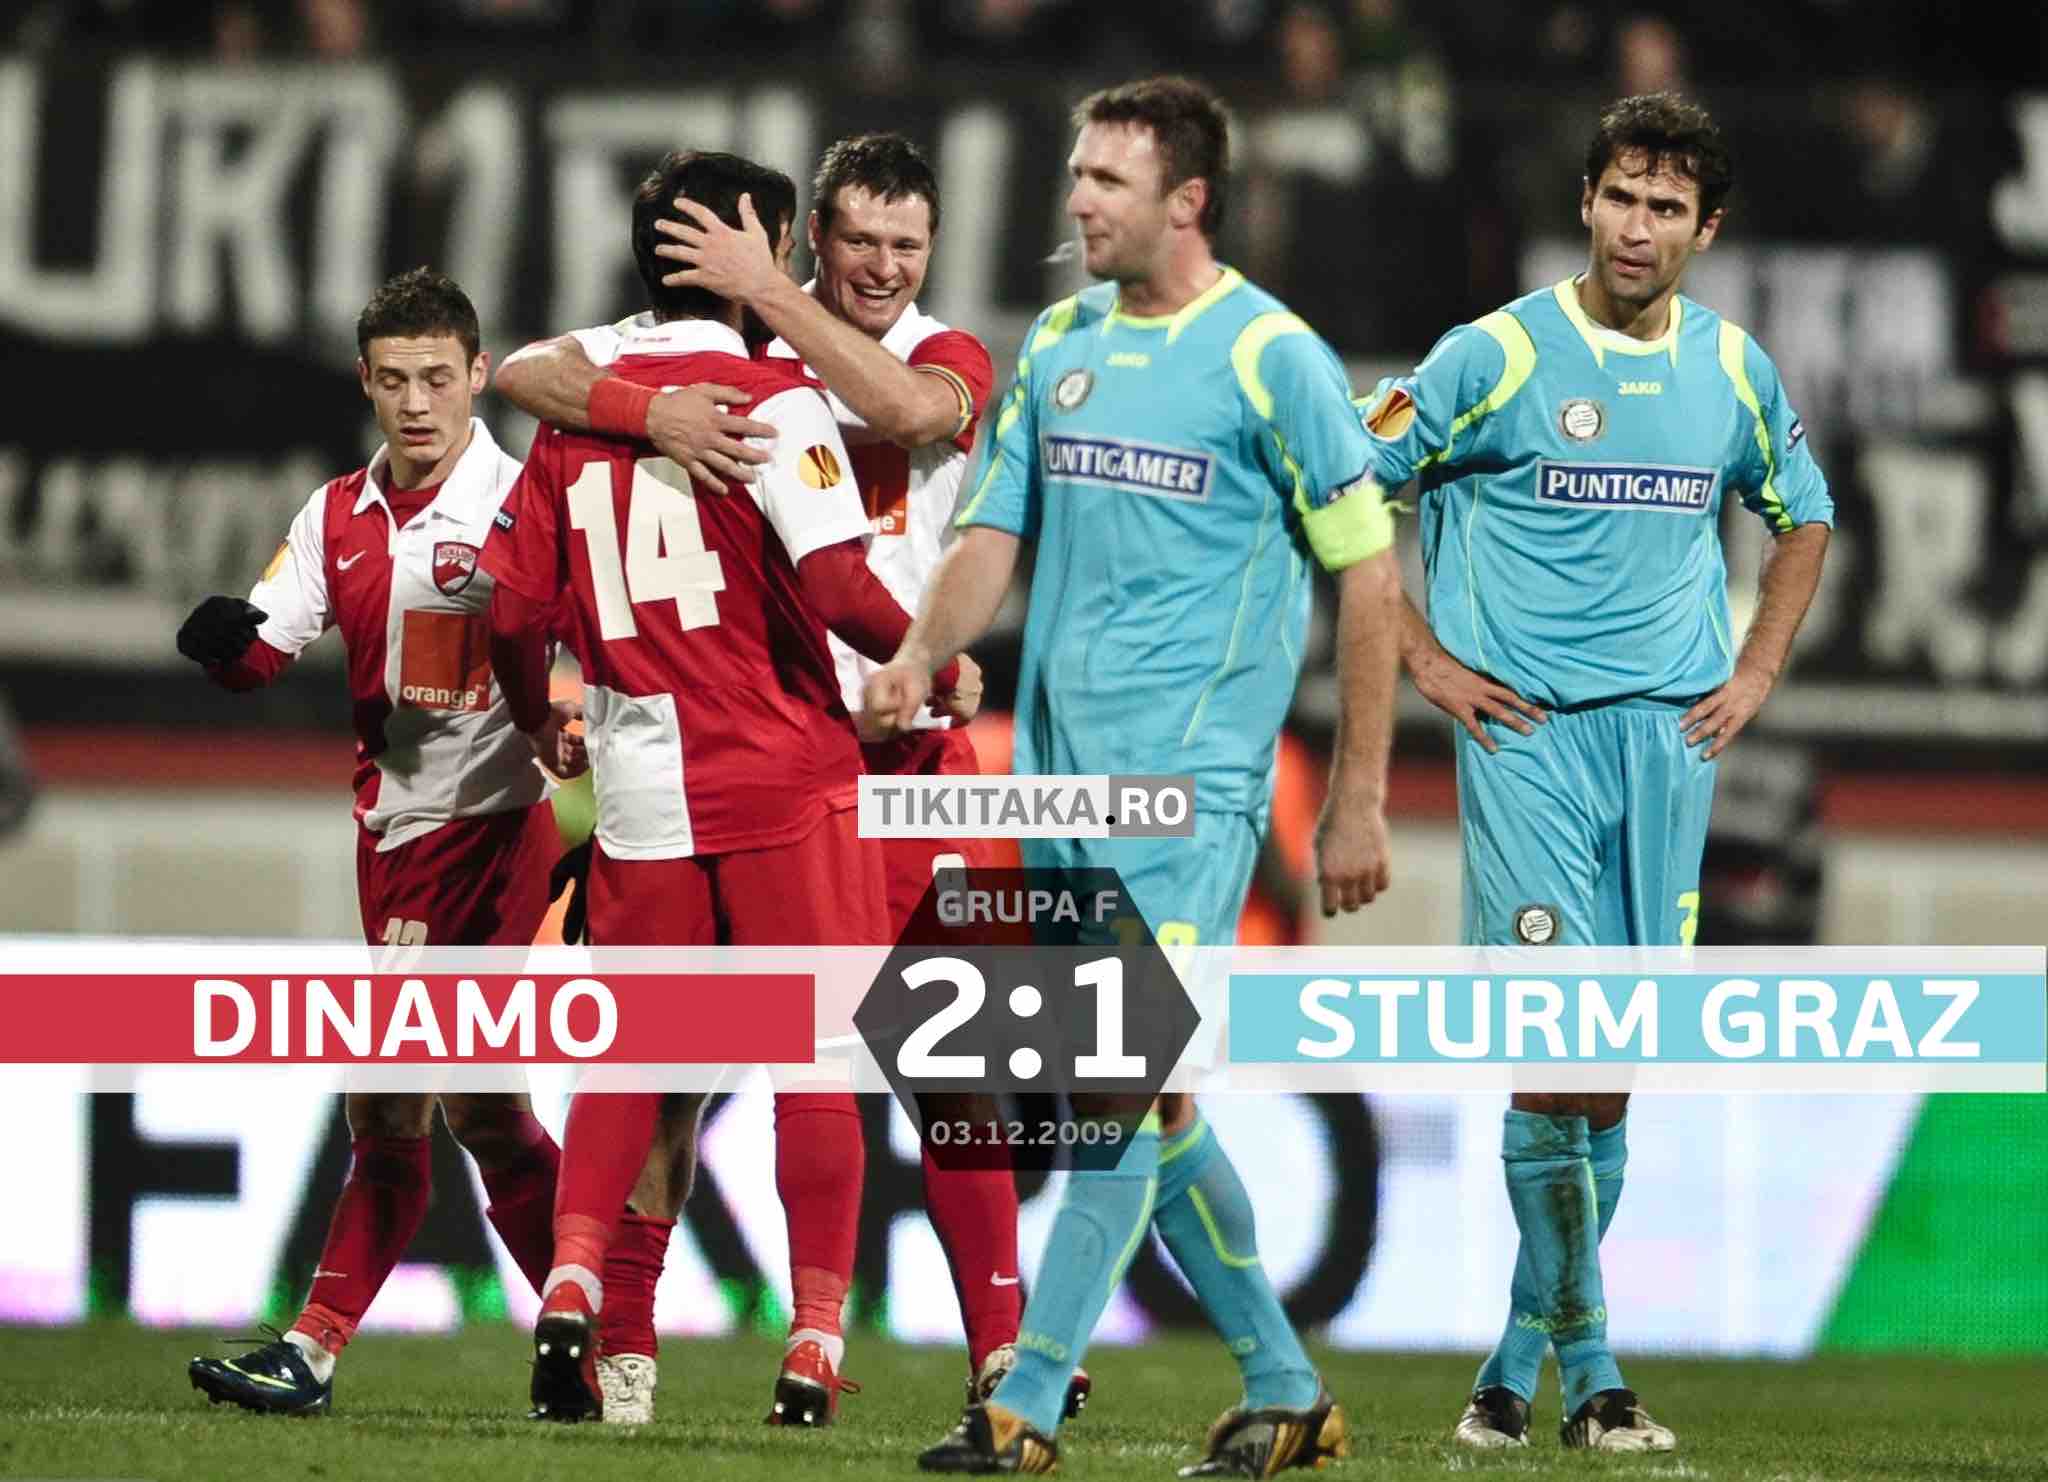 Dinamo 2-1 Sturm Graz 2009